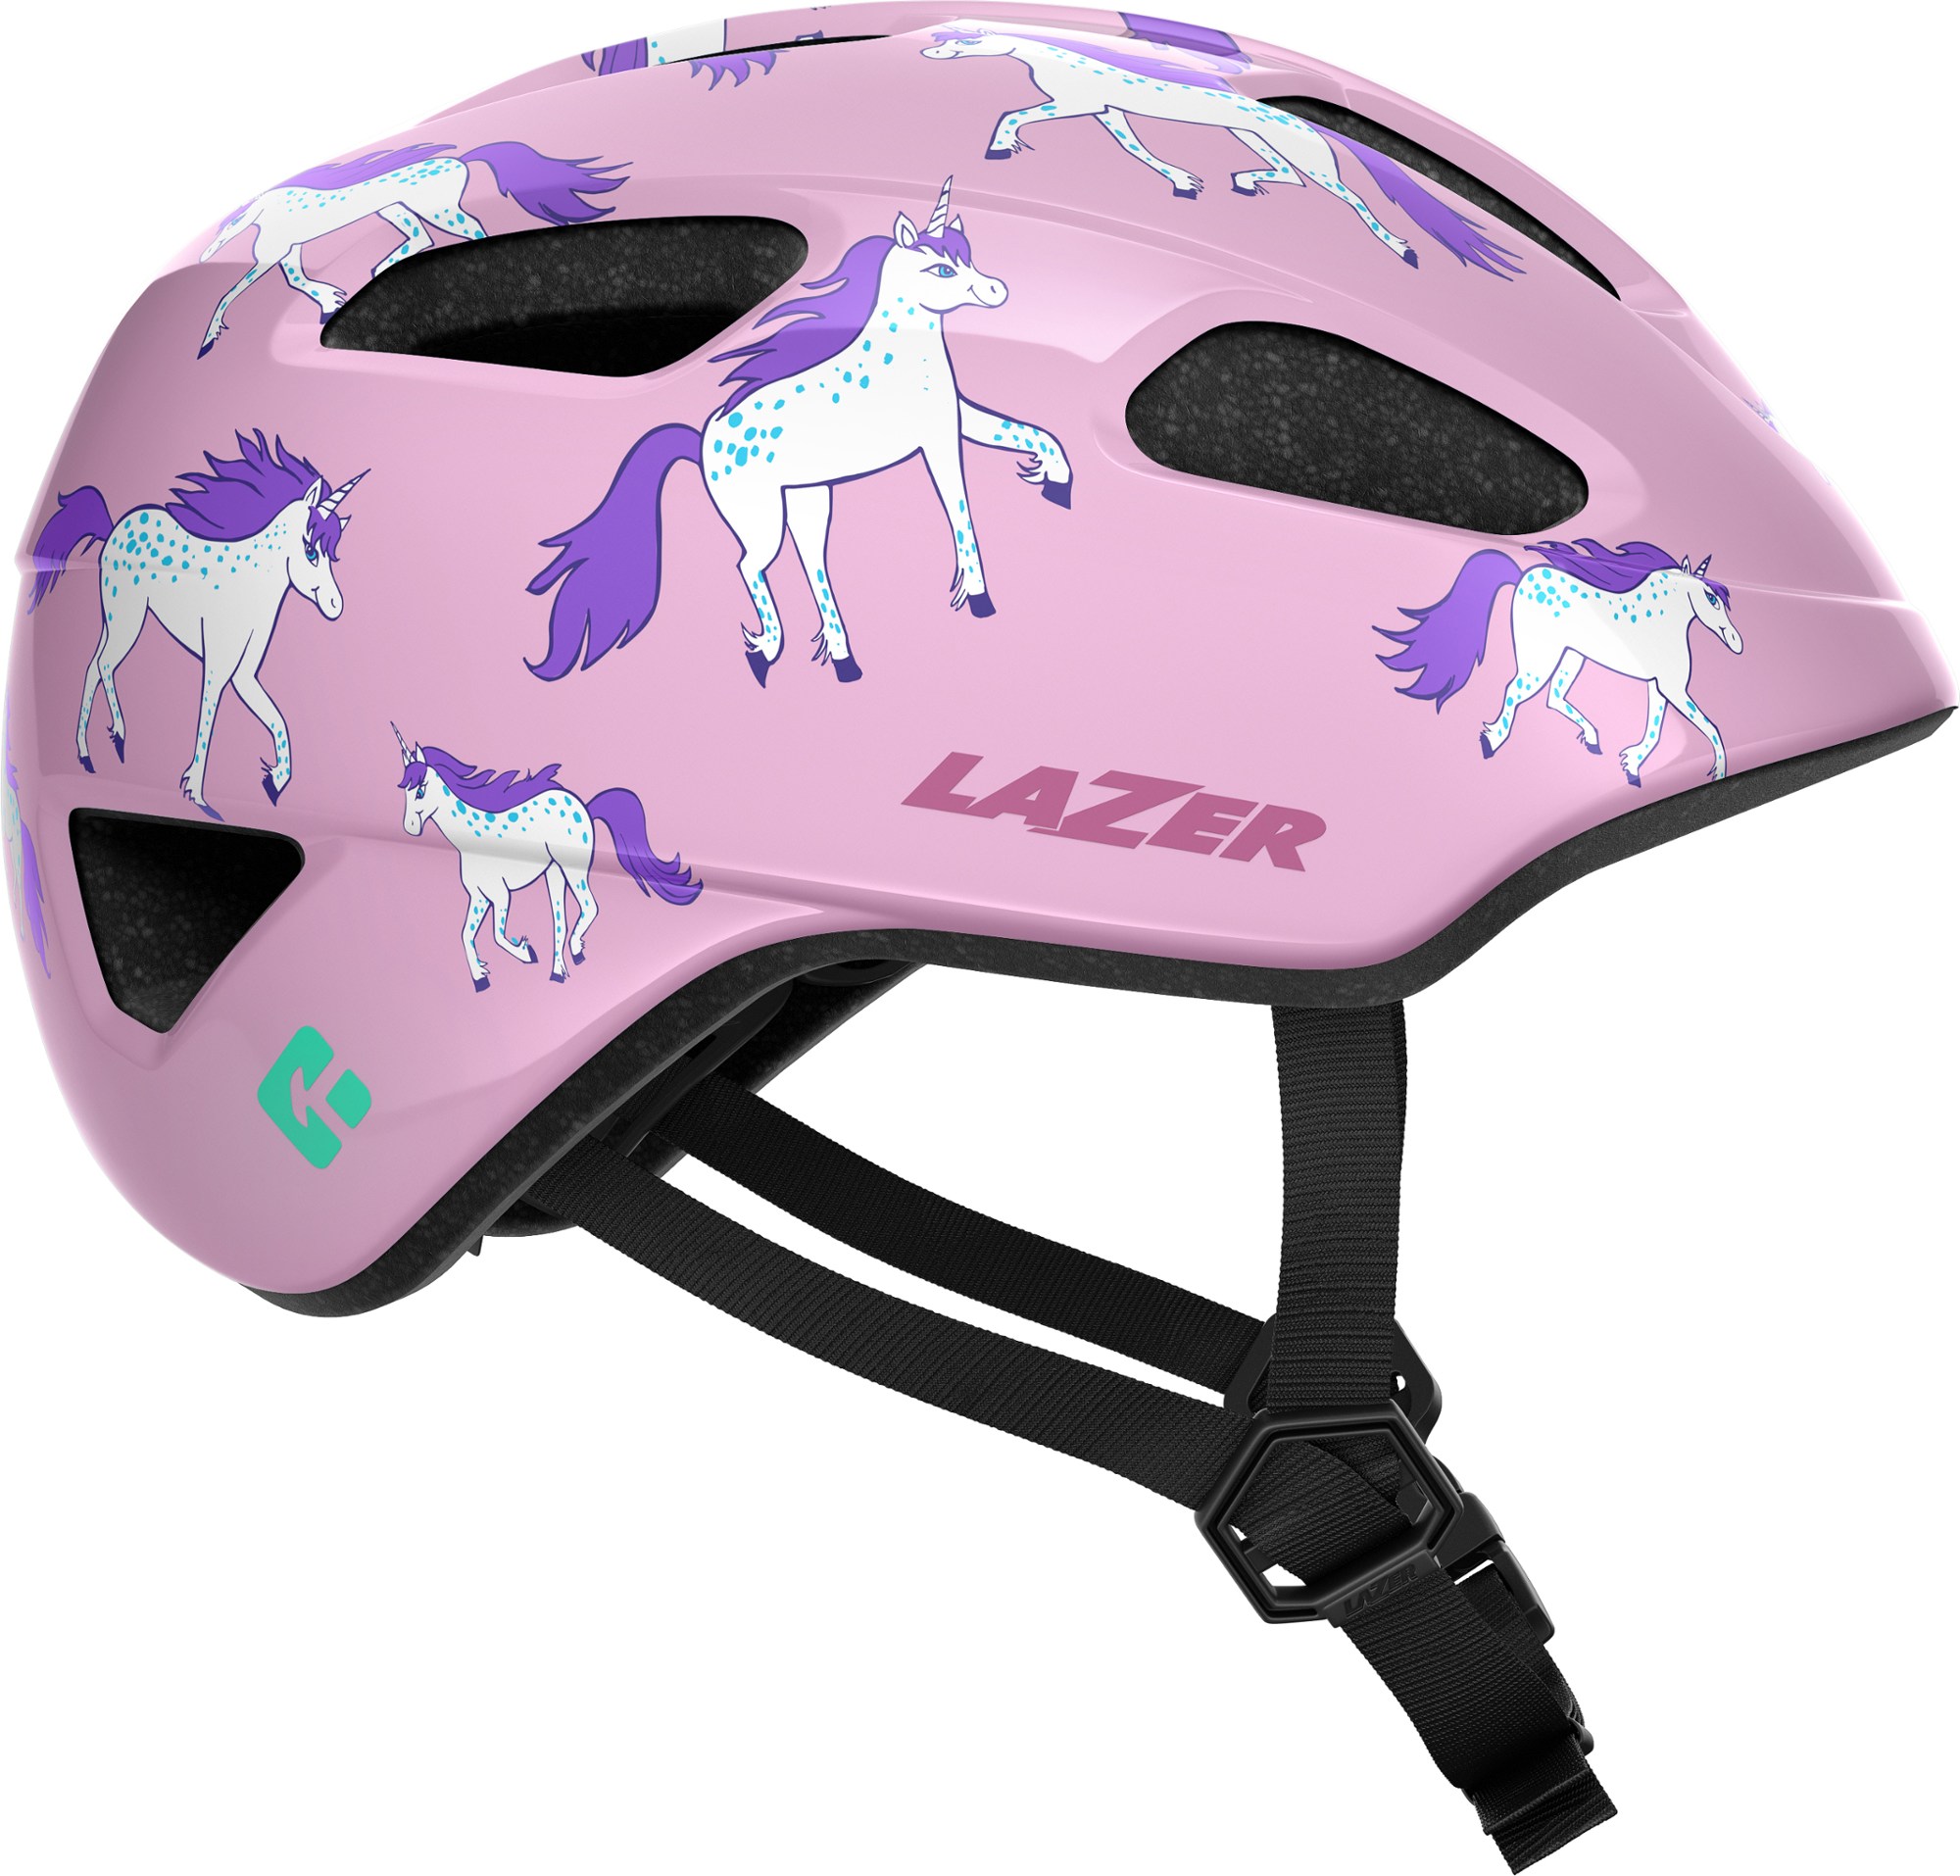 велосипедный шлем lazer genesis матовый титан Велосипедный шлем Nutz KinetiCore — детский Lazer, розовый